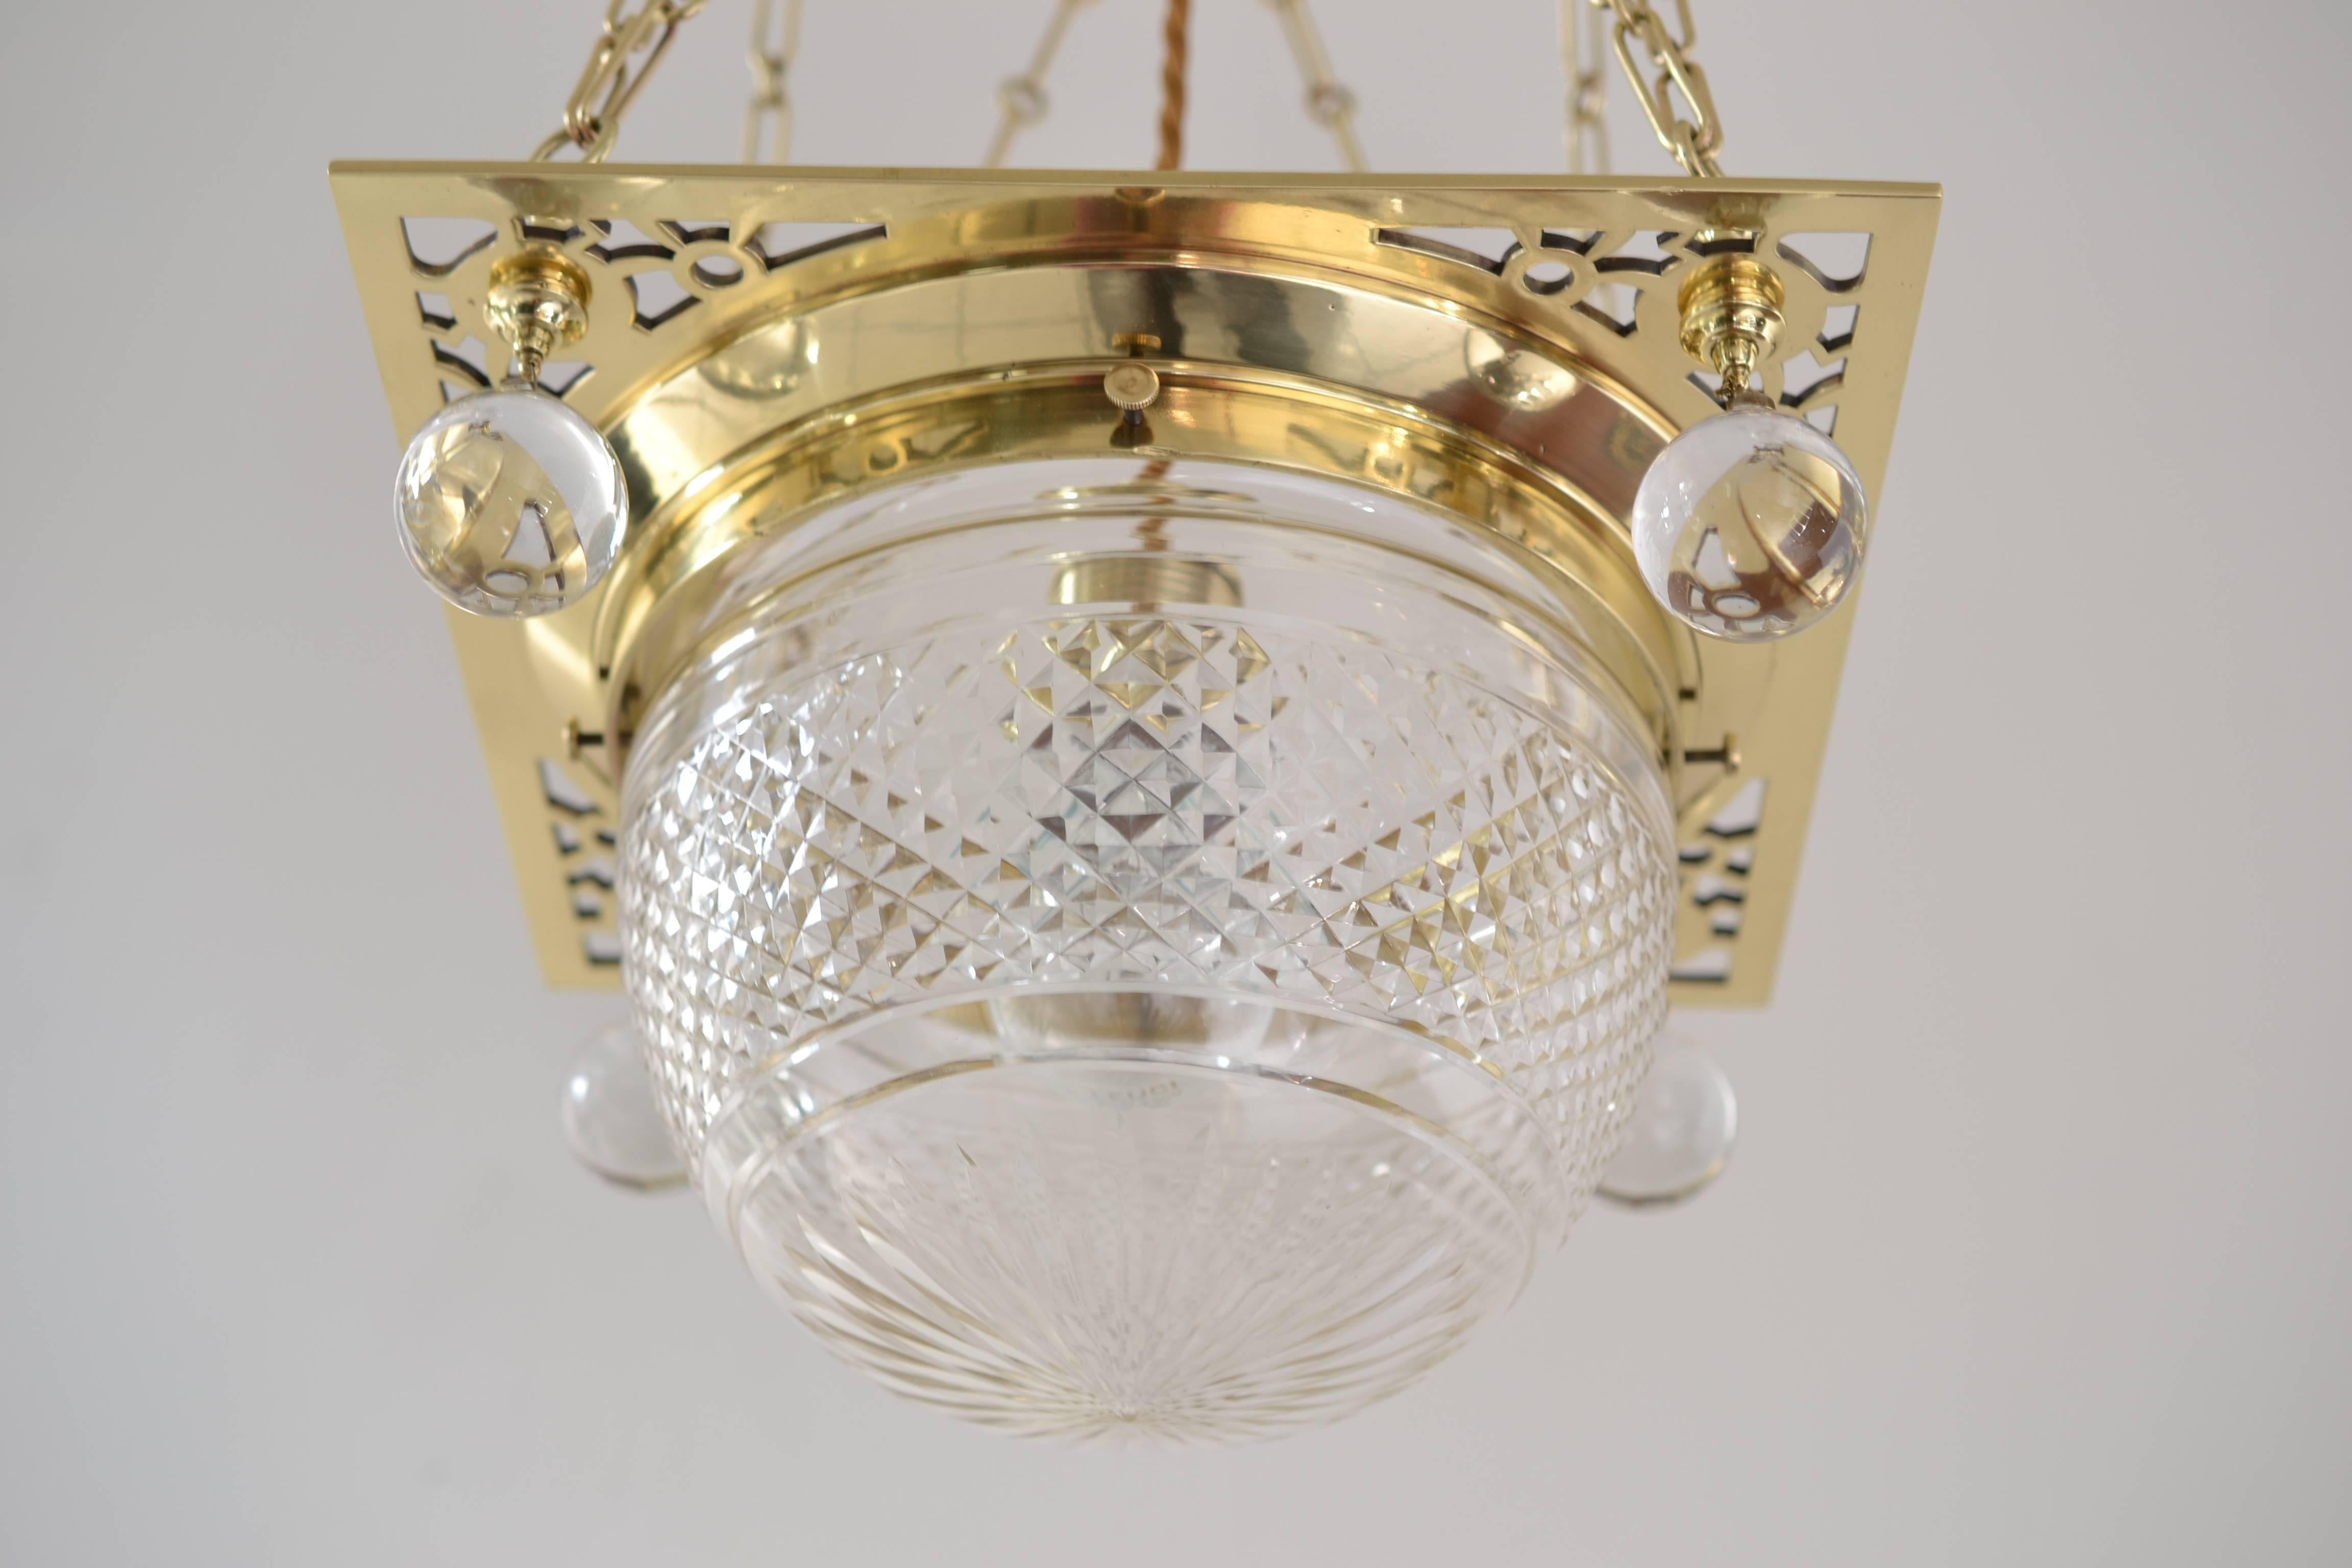 very beautiful jugendstil chandelier 
polished and stove enamelled